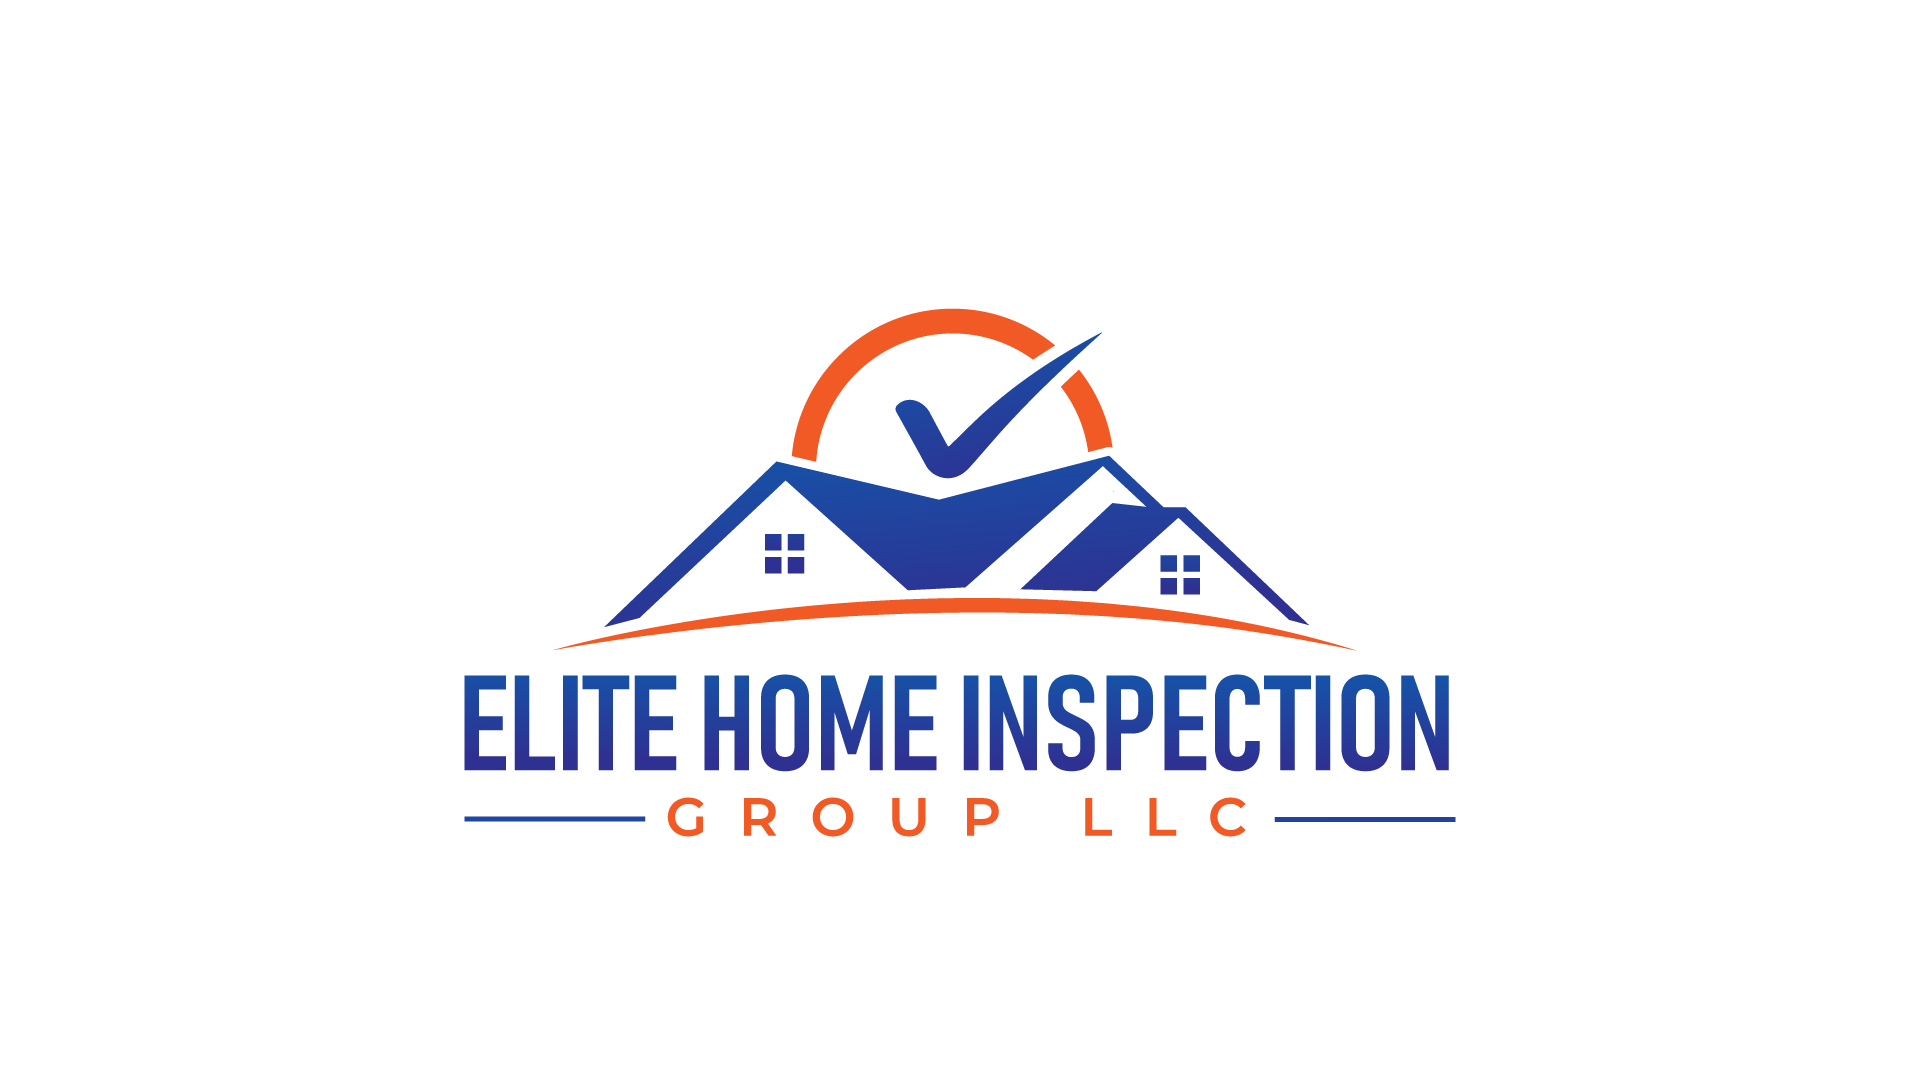 Elite Home Inspection Group, LLC Logo